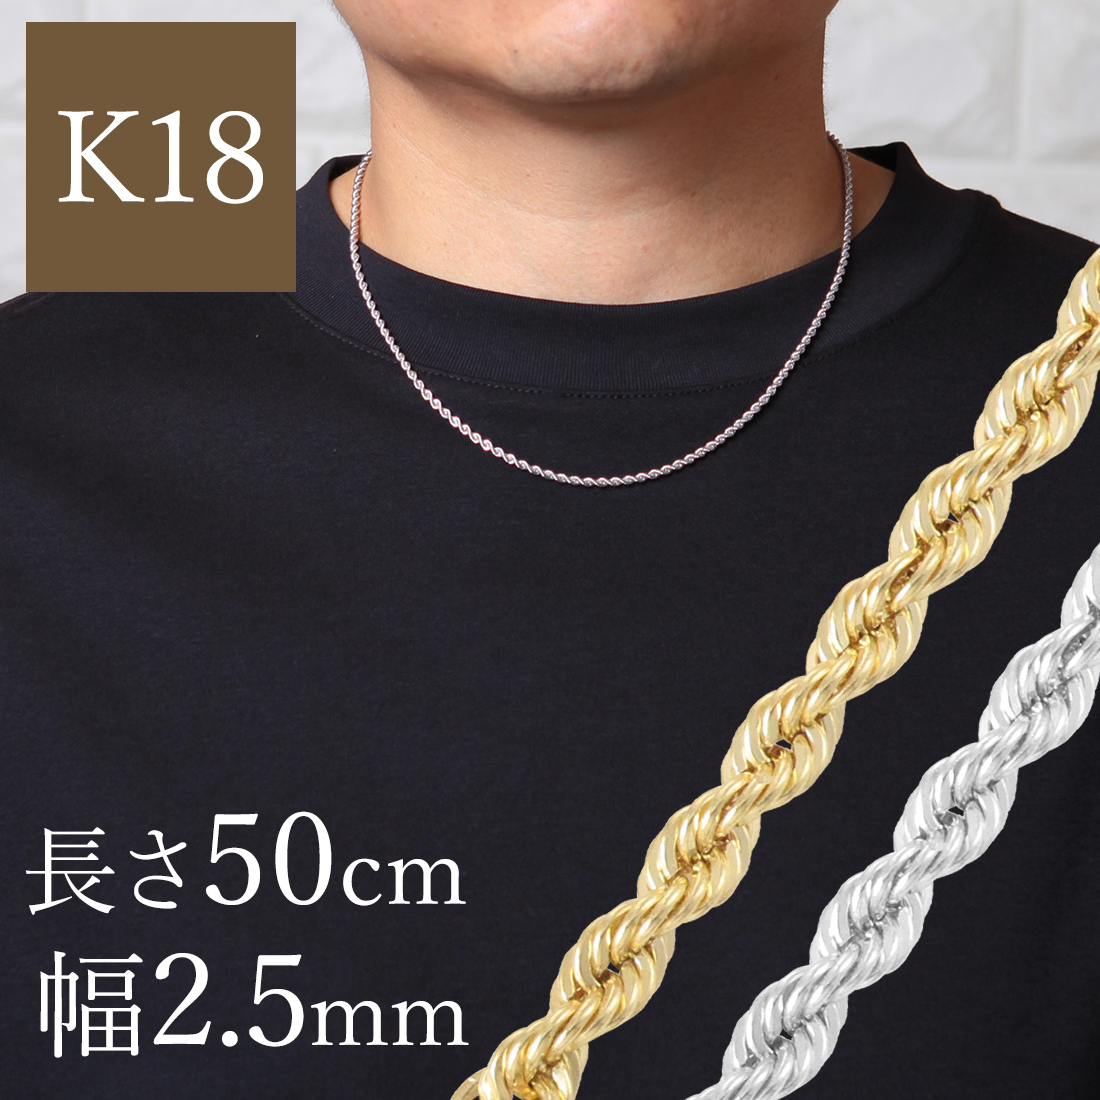 K18YG ロープチェーンネックレス50cm 幅2.5mm 4.65ｇ 18k 18金 ロープ チェーン メンズ パイプロープ イエローゴールド